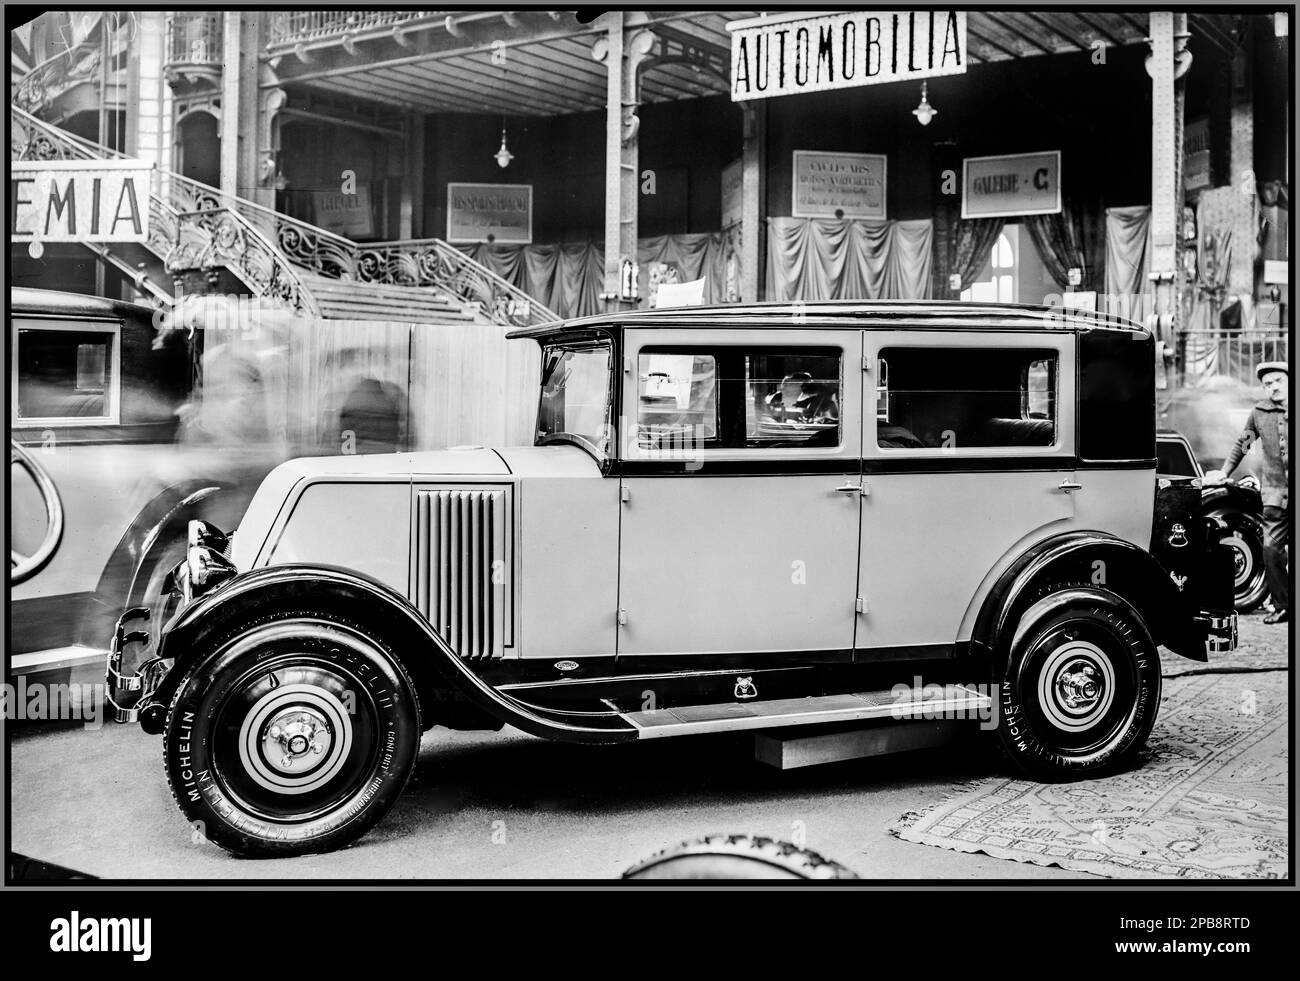 Vintage Paris Motor Show 1927 Renault 8 CV 6 cyl. 'Monasix', carrosserie Renault, berline rigide, [salon de l'auto] 1927 [intérieur du Grand Palais] la Renault Monasix (type RY) était une voiture compacte ou petite voiture familiale fabriquée entre 1927 et 1932 par Renault.Paris France Banque D'Images